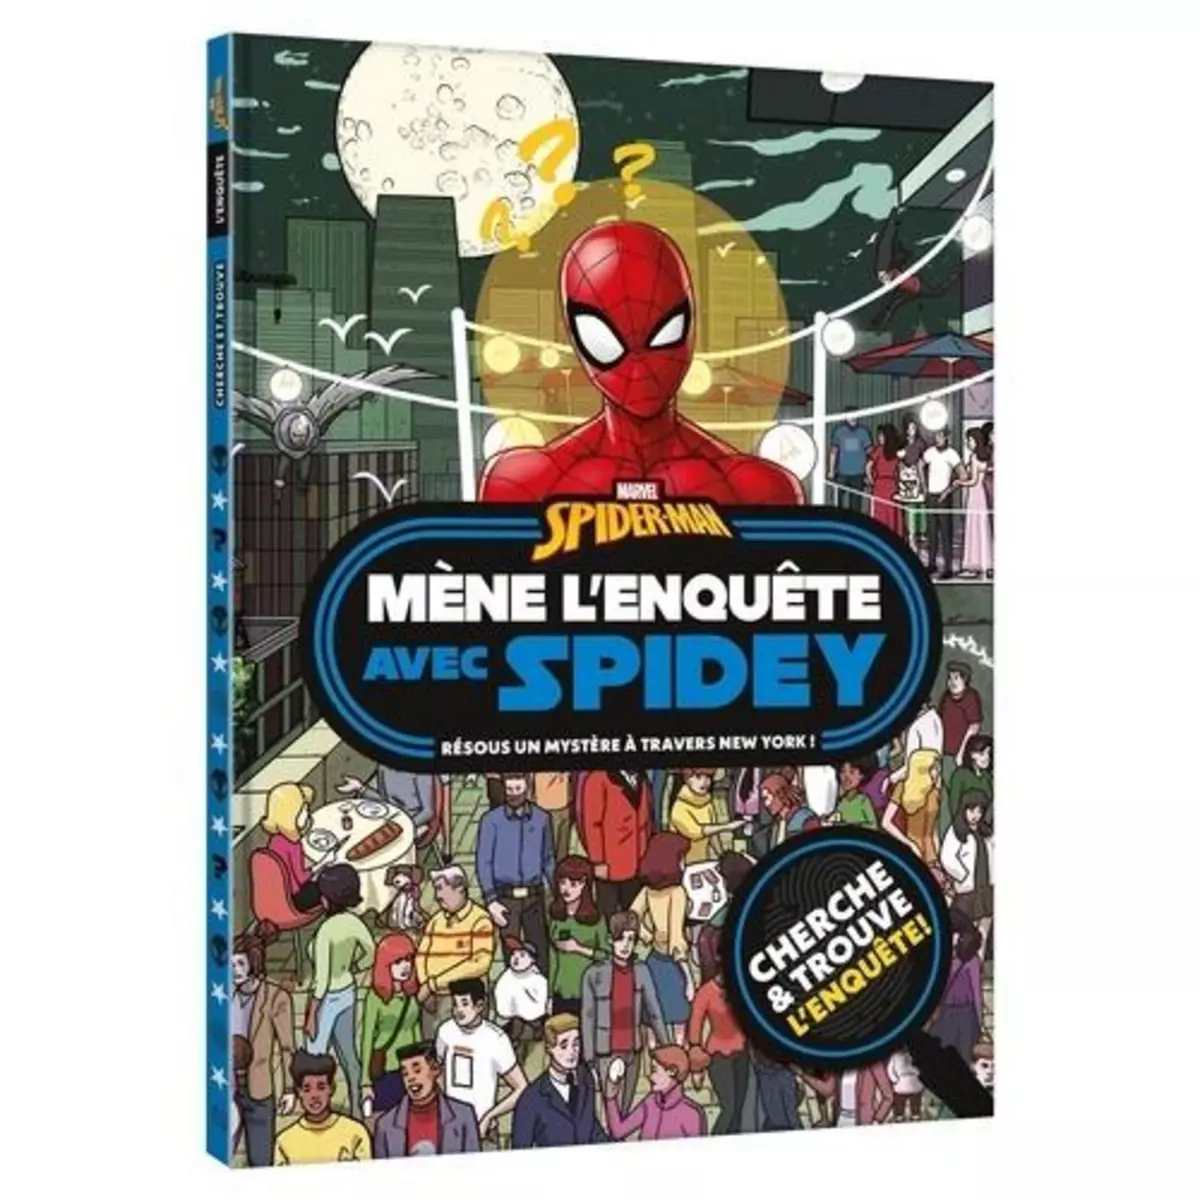  SPIDER-MAN : MENE L'ENQUETE AVEC SPIDEY. RESOUS UN MYSTERE A TRAVERS NEW YORK !, Marvel